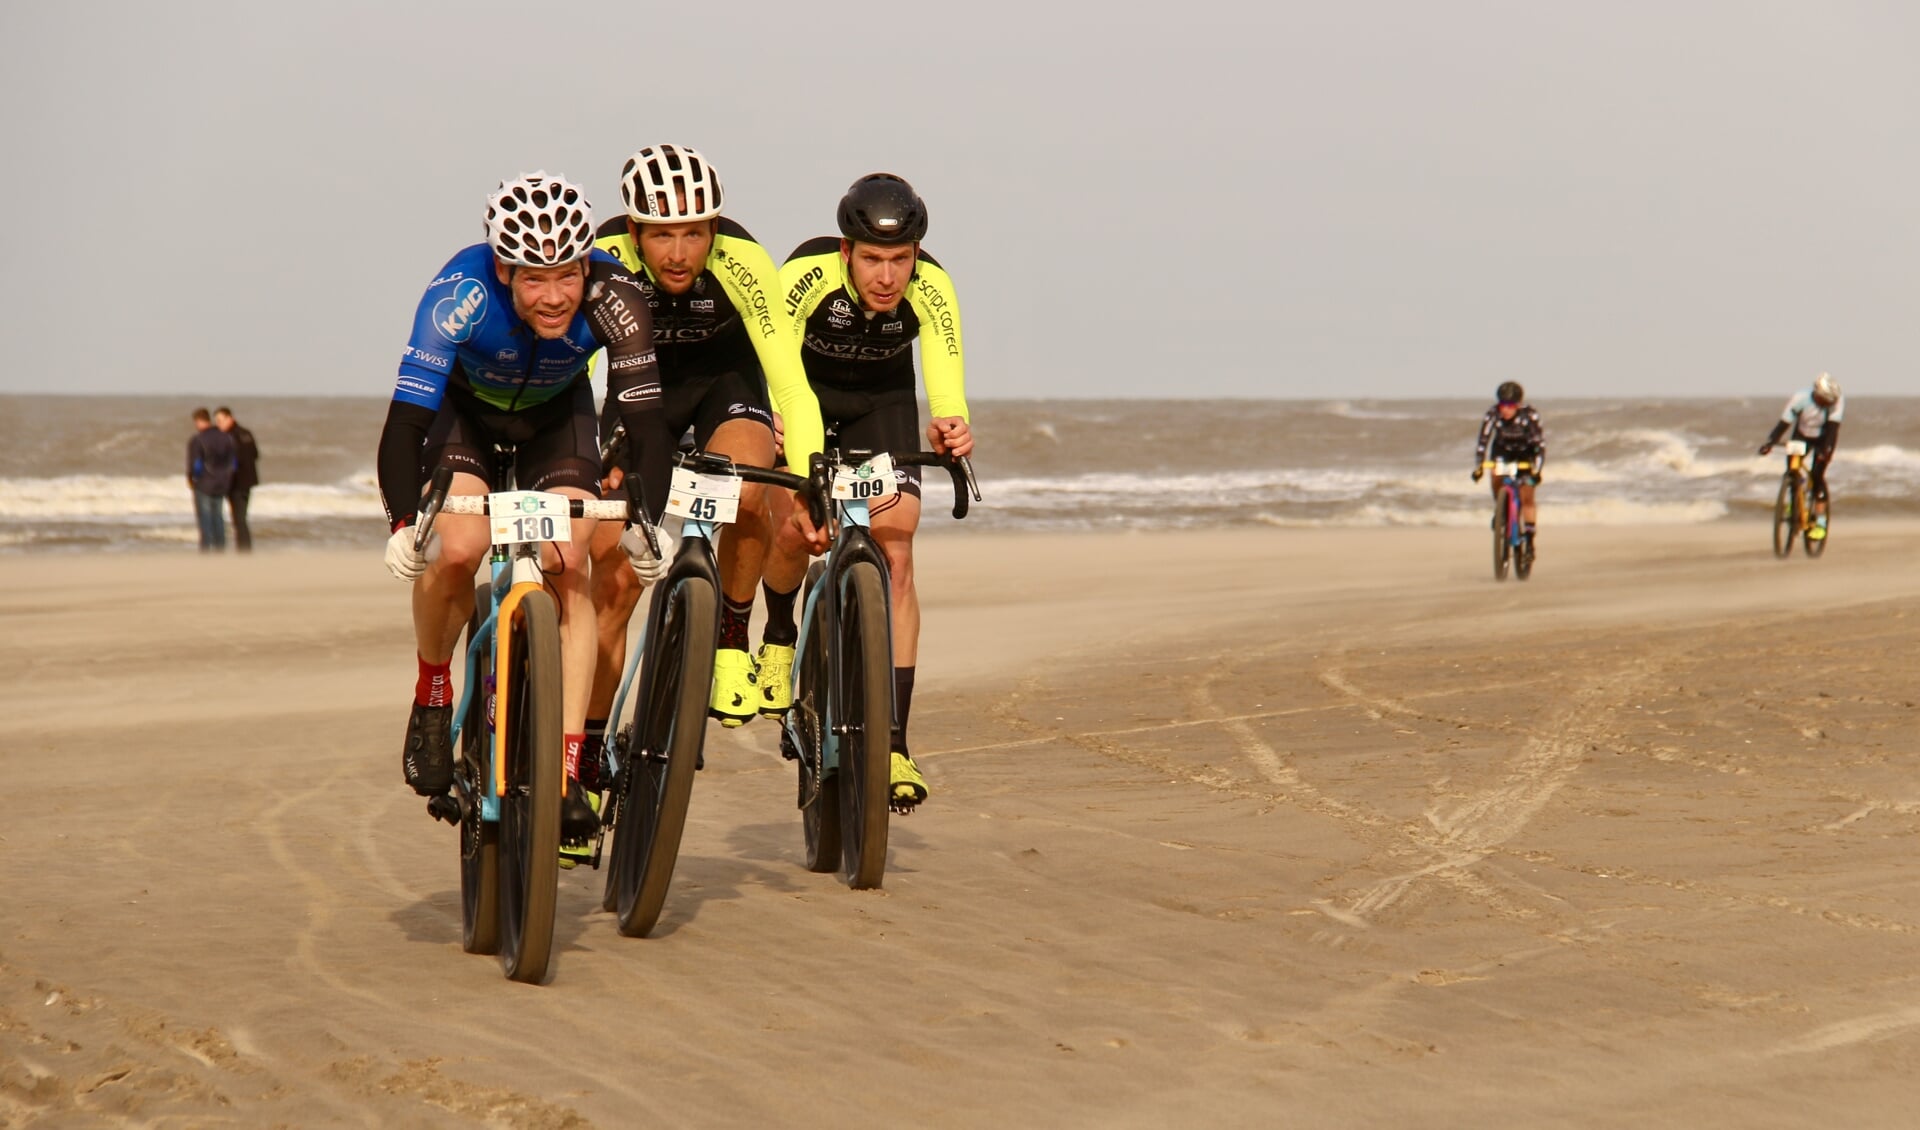 Rames Bekkenk (130) rijdt aan kop, Johnny Hoogerland (45) en Ronan van Zandbeek (109) volgen. | Foto: Irene v.d. Plas